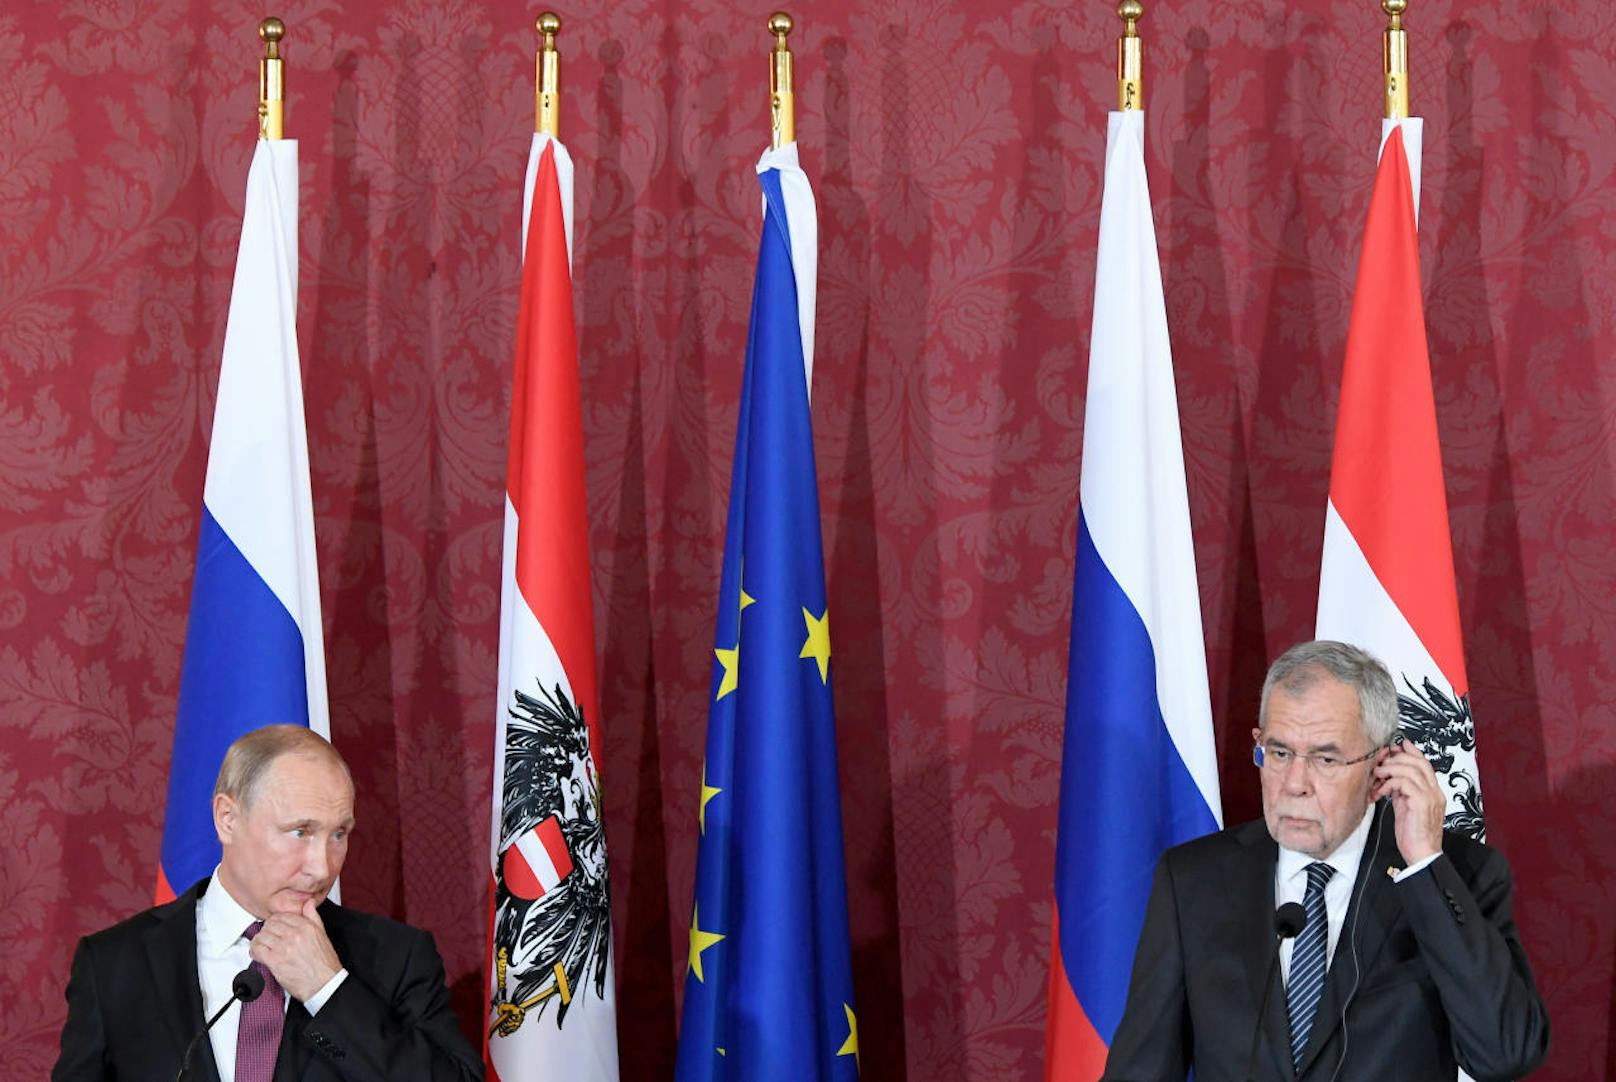 Beim Pressestatement nach ihrem Arbeitsgespräch betonten Putin und Van der Bellen die guten Beziehungen zwischen Russland und Österreich.